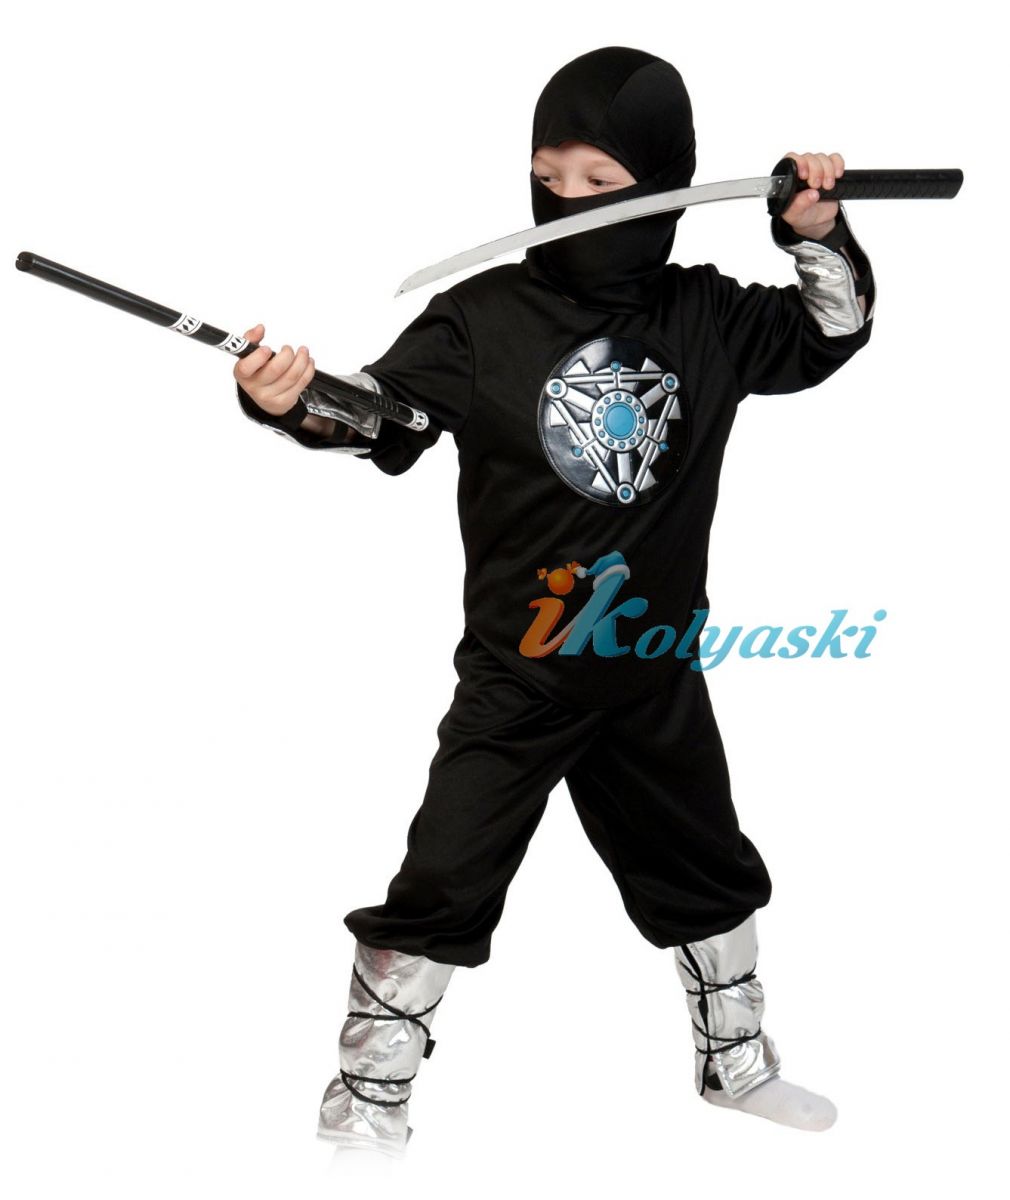 Как сделать костюм ниндзя своими руками: отважный воин из 12 футболок